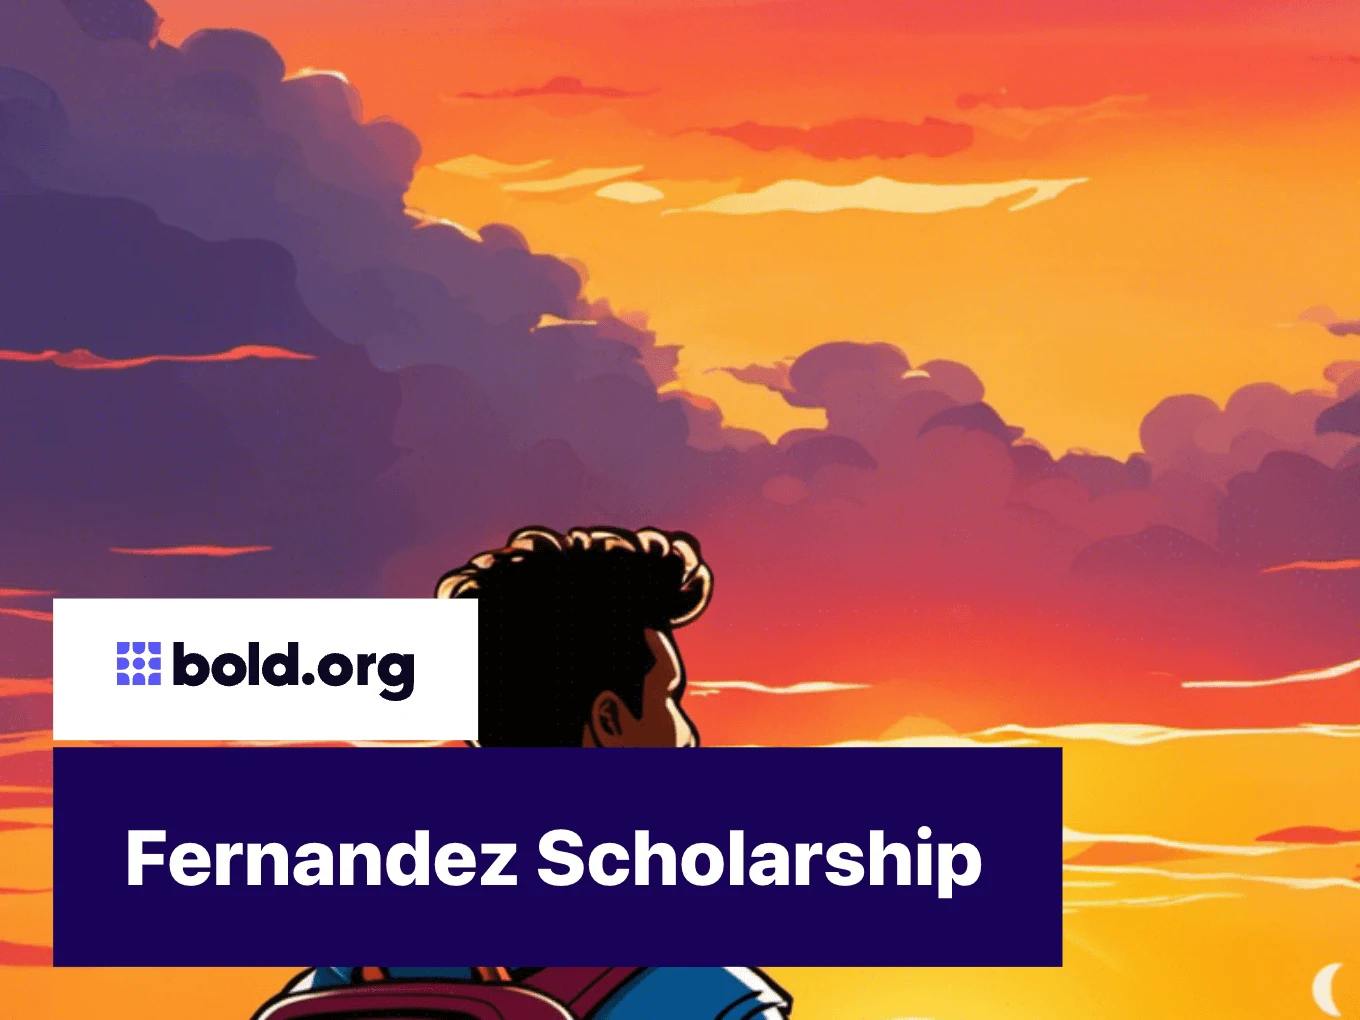 Fernandez Scholarship